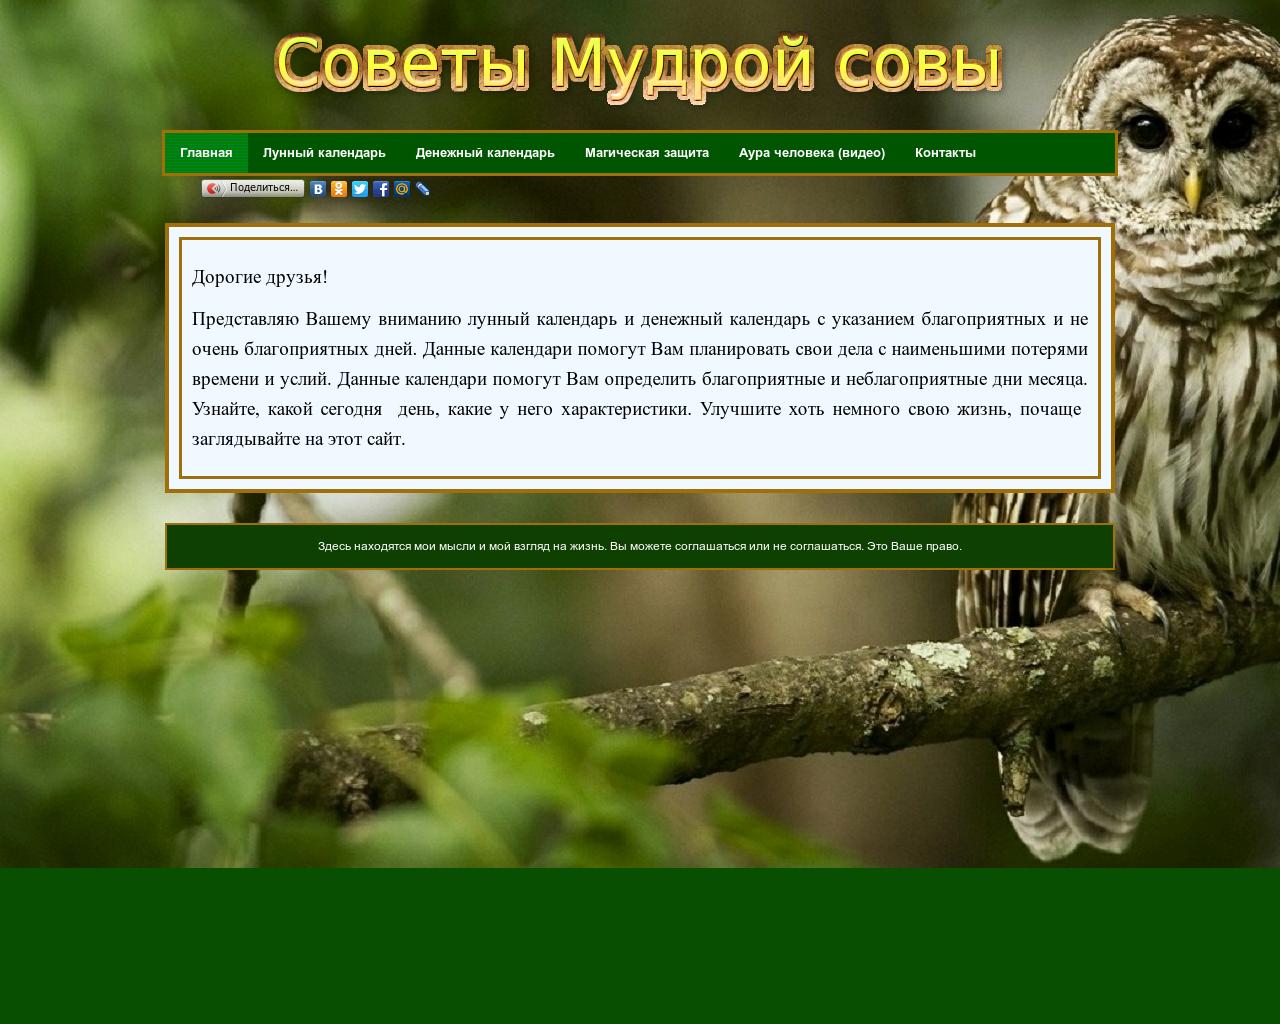 Изображение сайта sova22.ru в разрешении 1280x1024